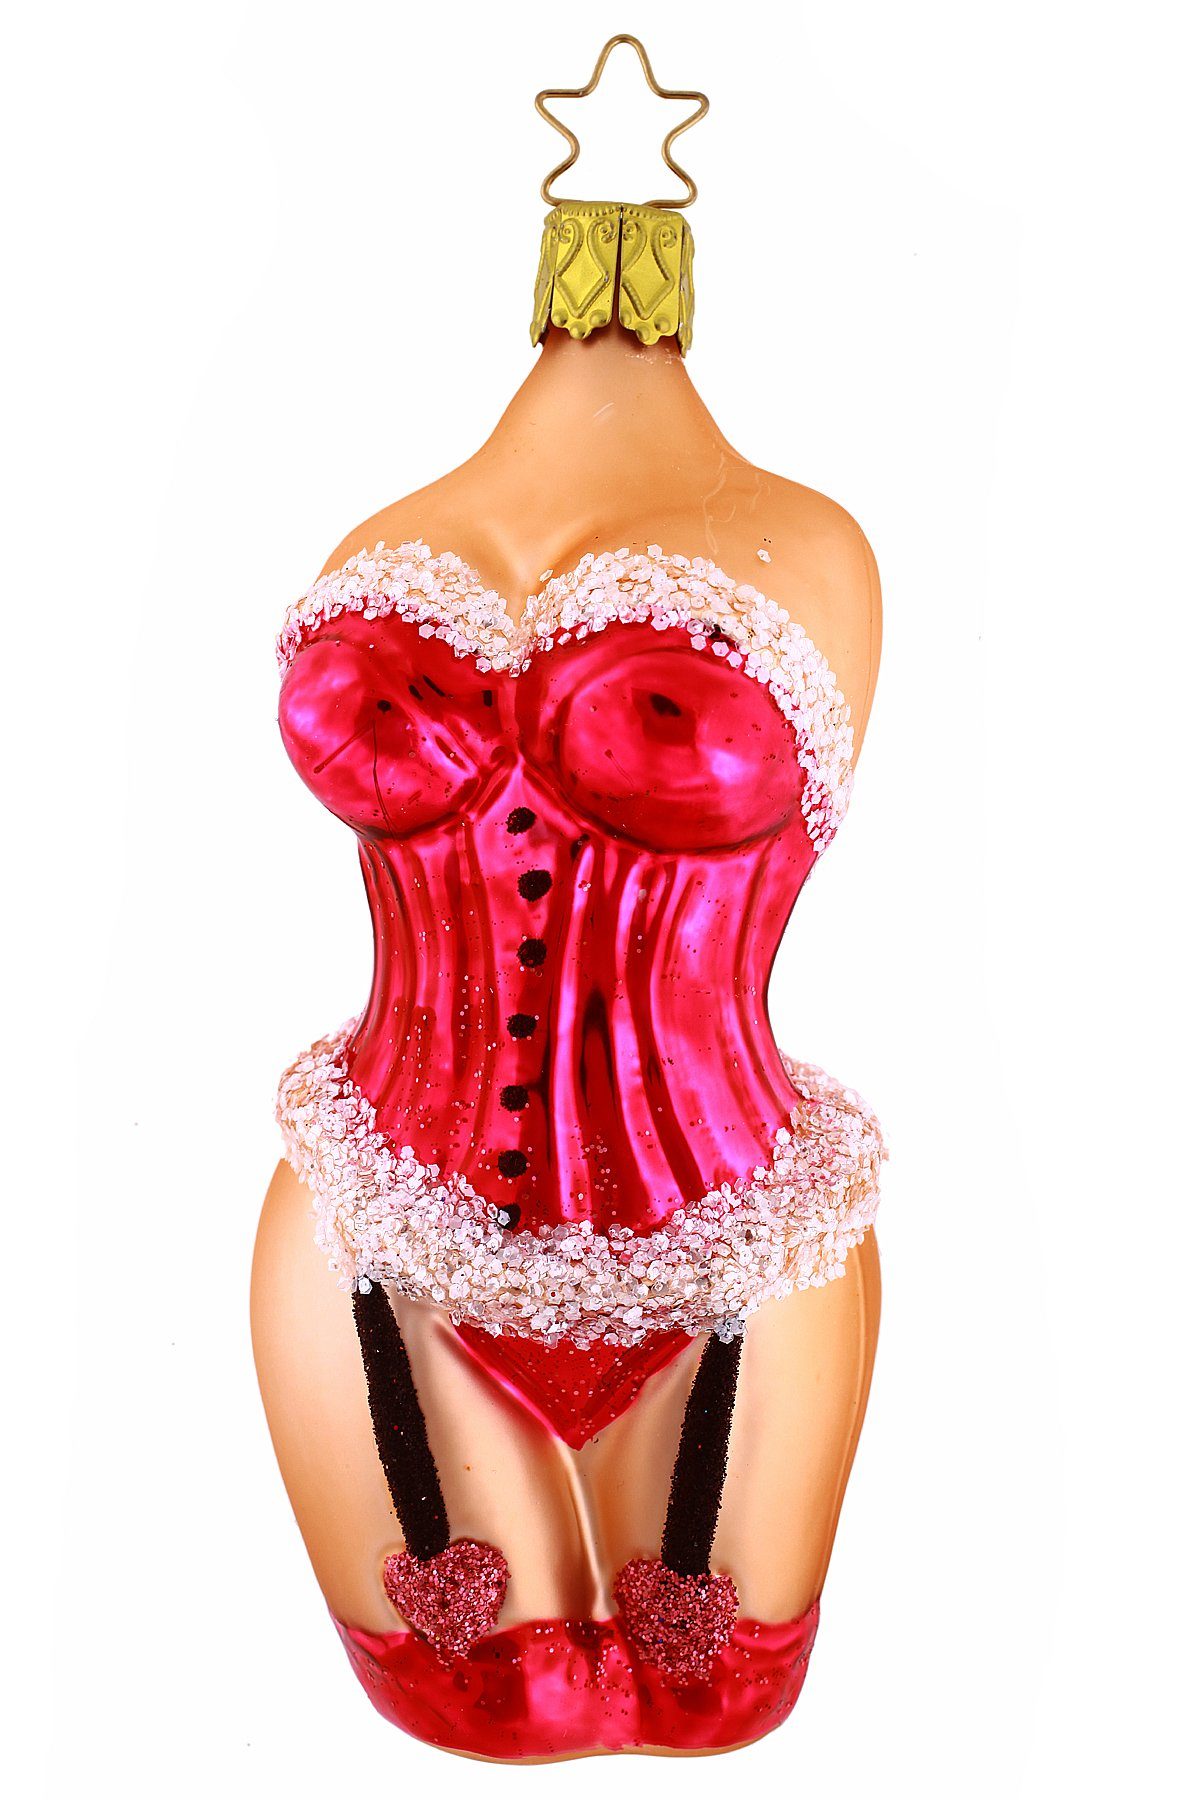 Hamburger Weihnachtskontor Manufaktur Inge-Glas® Korsage - - Dekohänger - mundgeblasen handdekoriert Christbaumschmuck pink